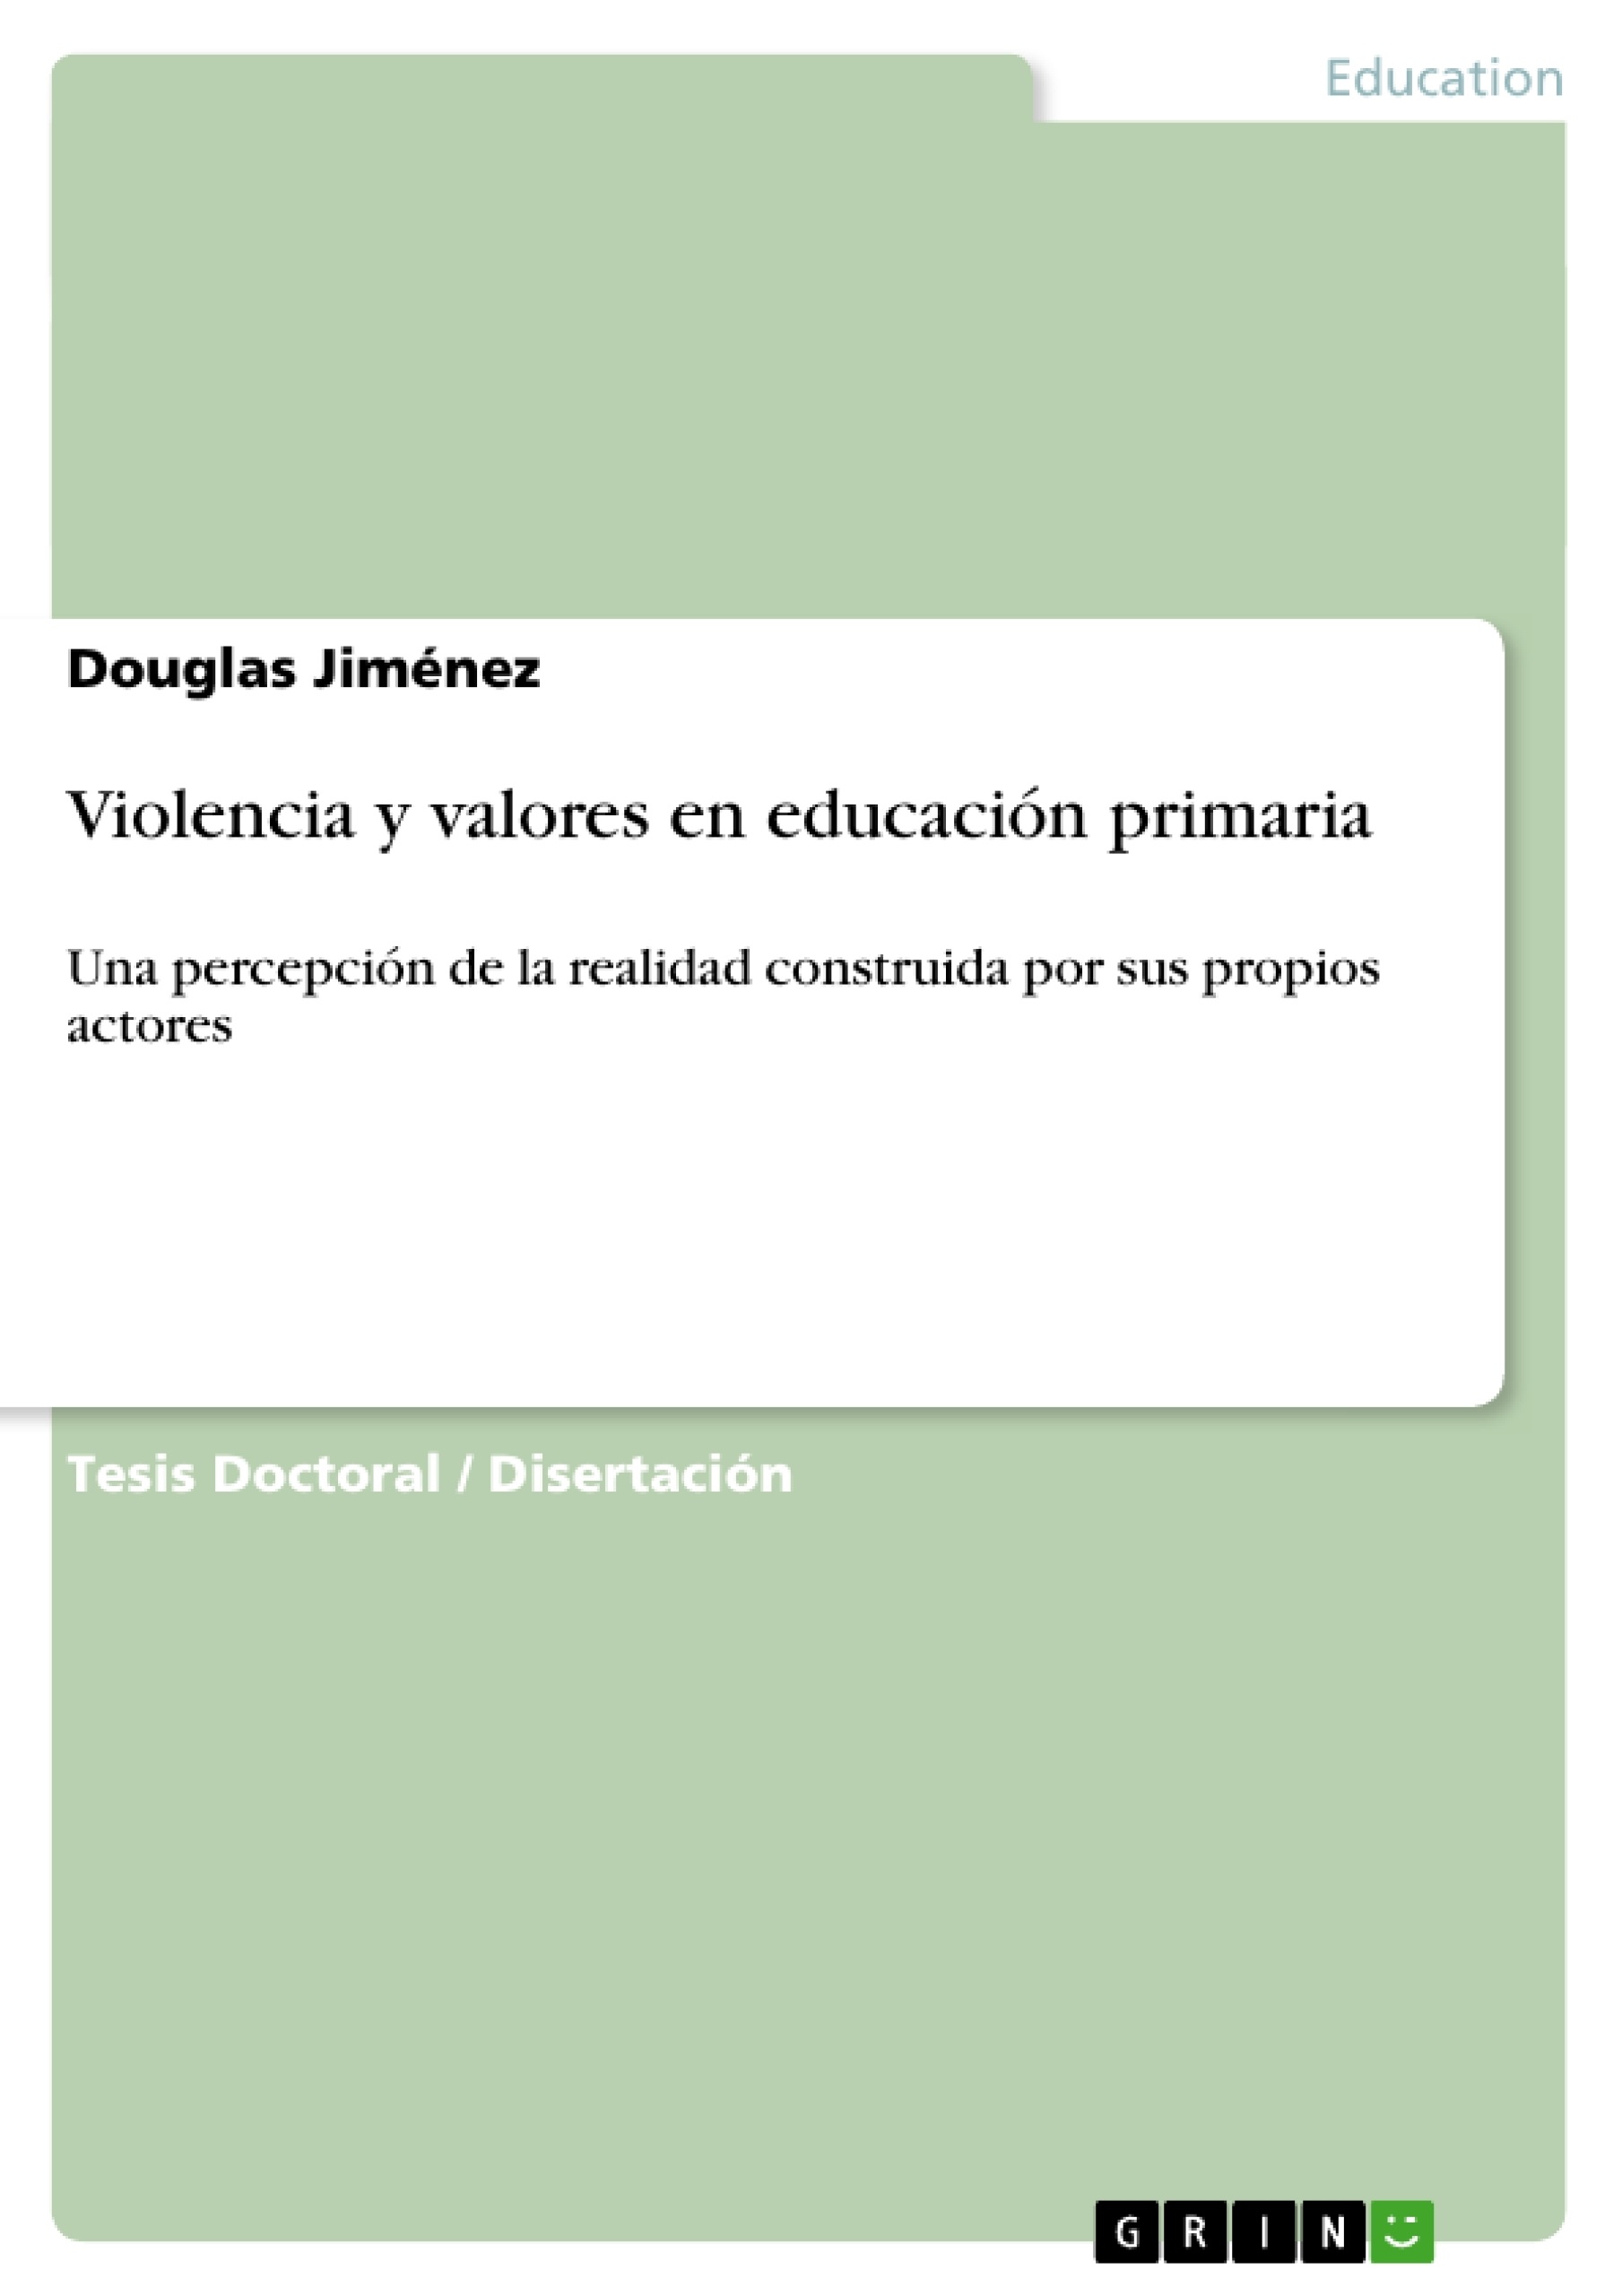 Título: Violencia y valores en educación primaria